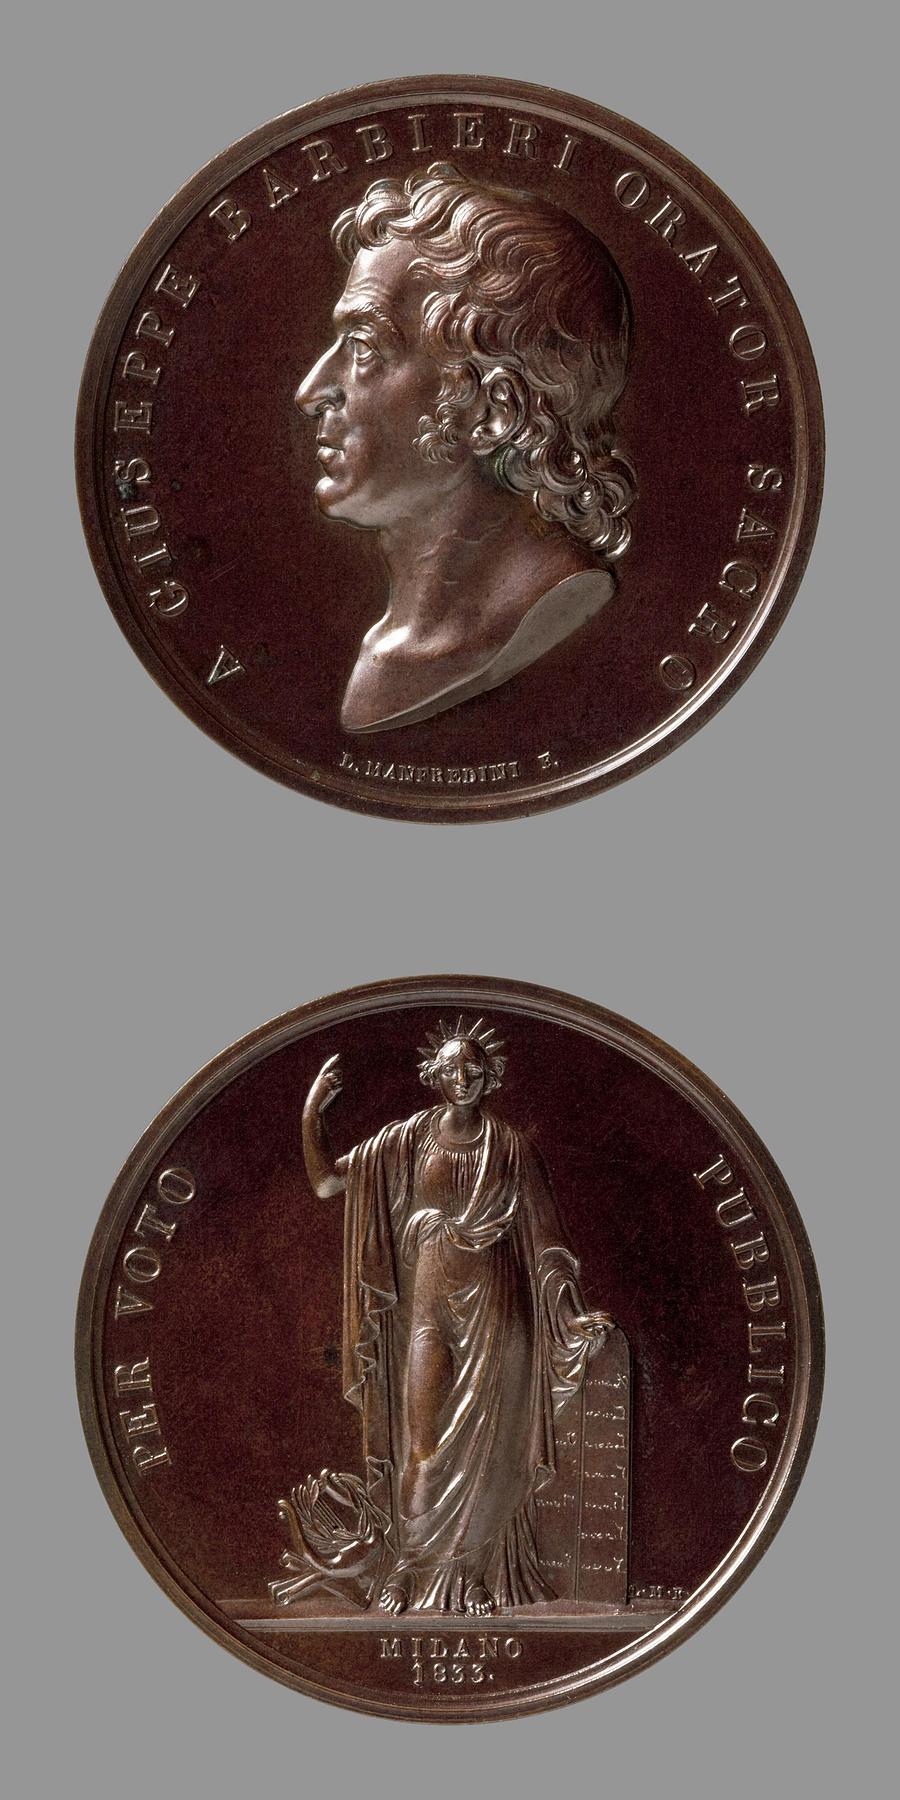 Medaljens forside: Giuseppe Barbieri. Medaljens bagside: Religionen, F101